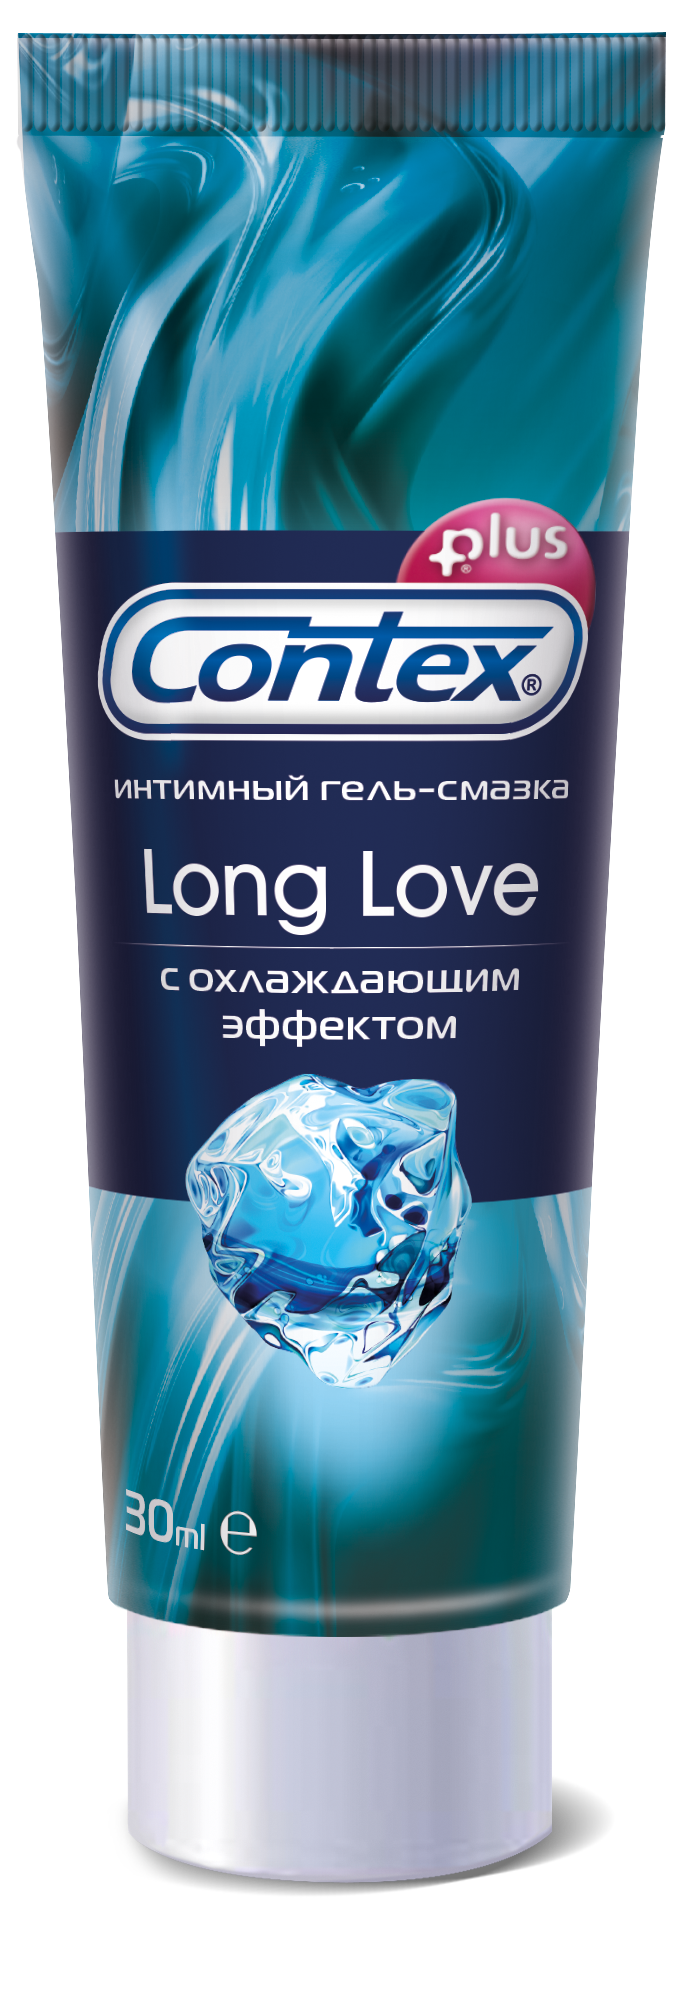 Гель-смазка Contex Long Love 30мл с охлаждающим эффектом